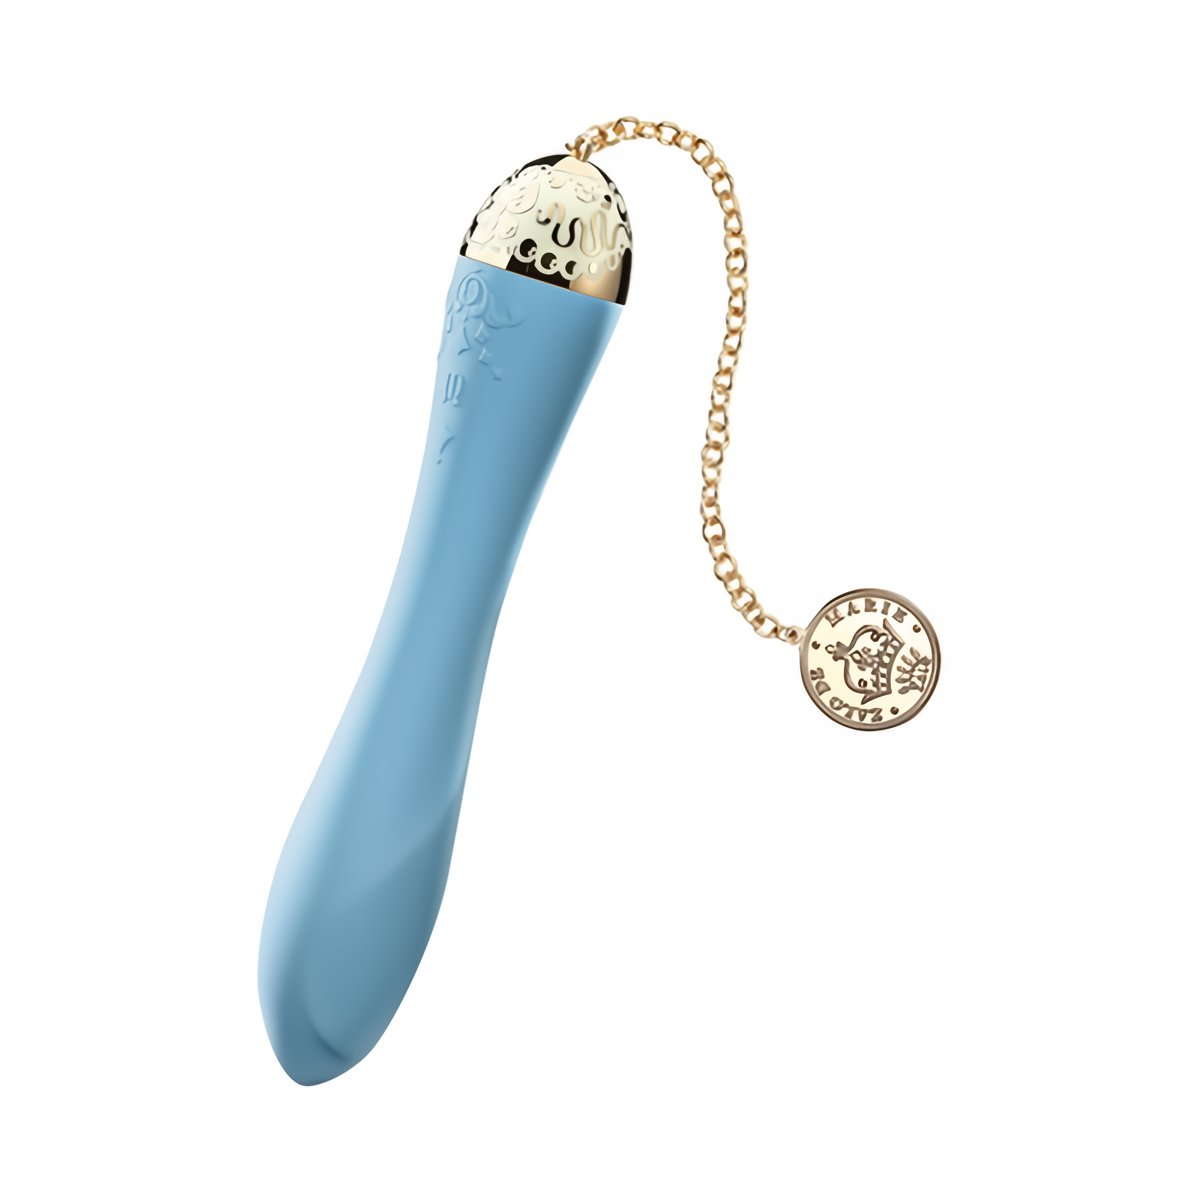 Marie royal blue - EroticToyzProducten,Toys,Vibrators,G - Spot Vibrator,,GeslachtsneutraalZalo